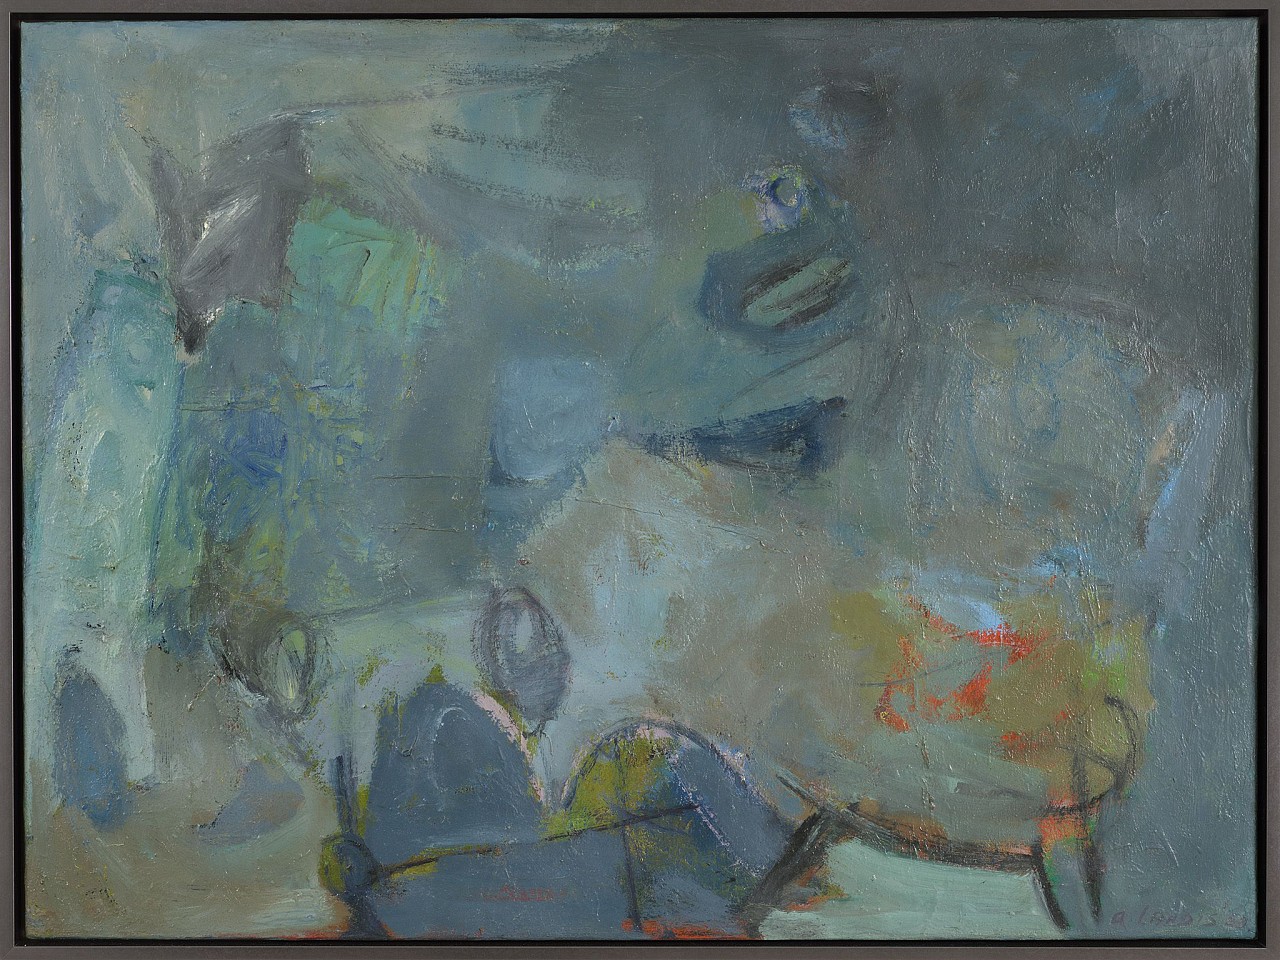 Adelie Landis Bischoff, Still Life No. 2 | SOLD, 1953
Oil on canvas, 35 1/2 x 47 3/4 in. (90.2 x 121.3 cm)
ALB-00002